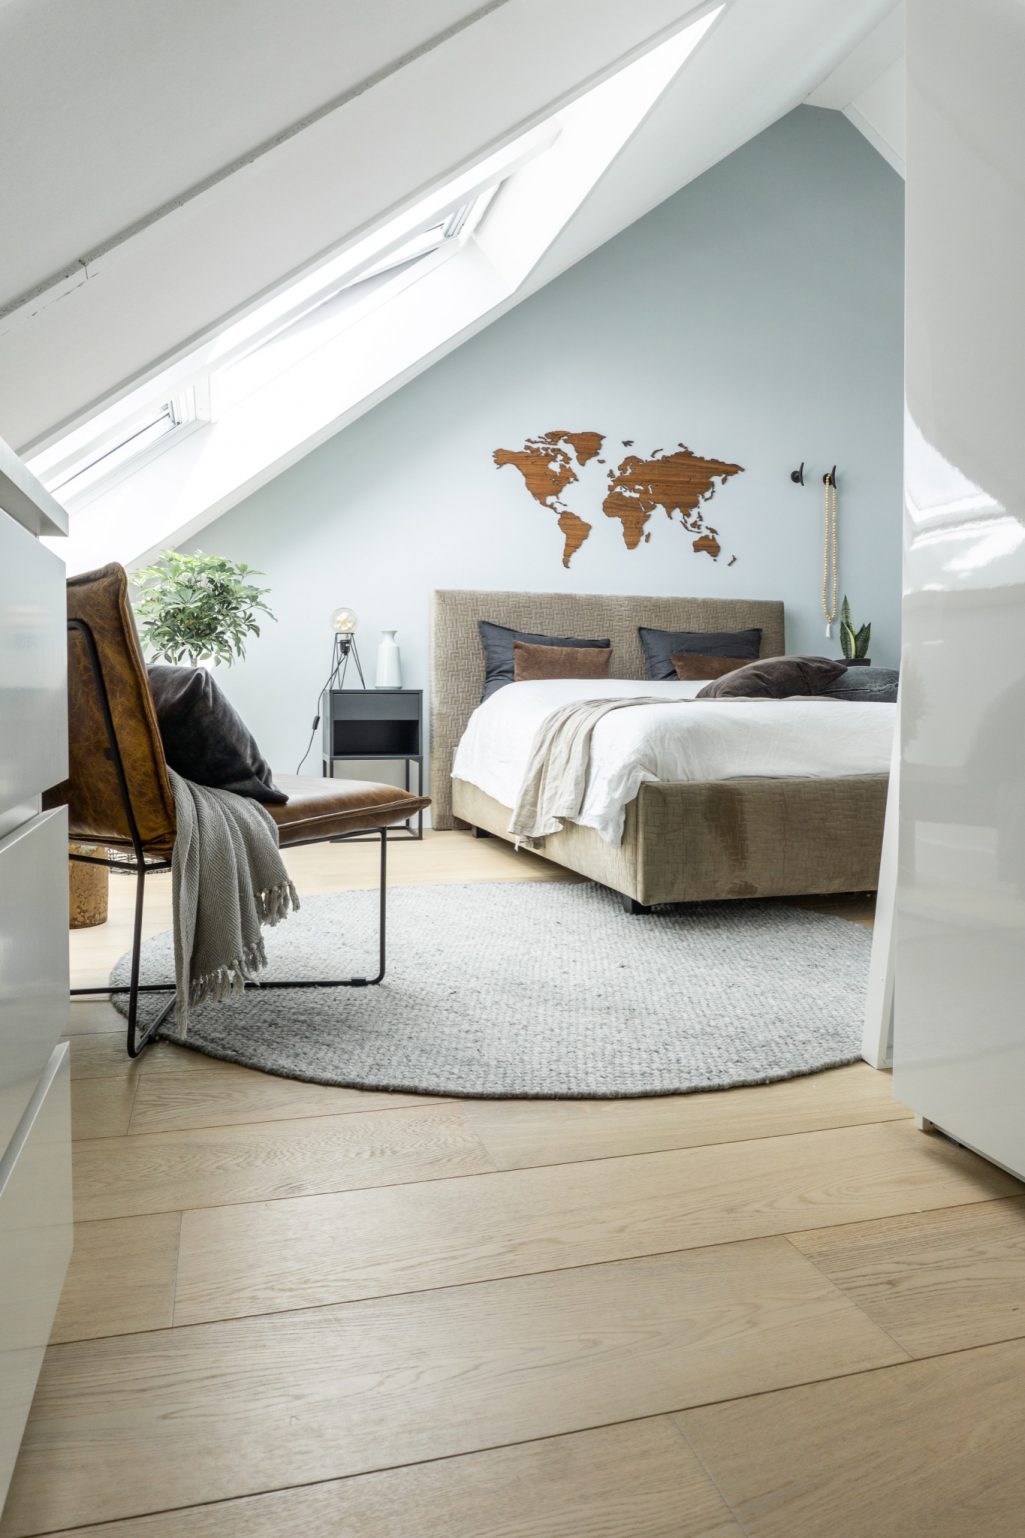 Slaapkamer maken op schuine zolder | Stek Magazine | Binnenkijken bij Interiorholic Thera